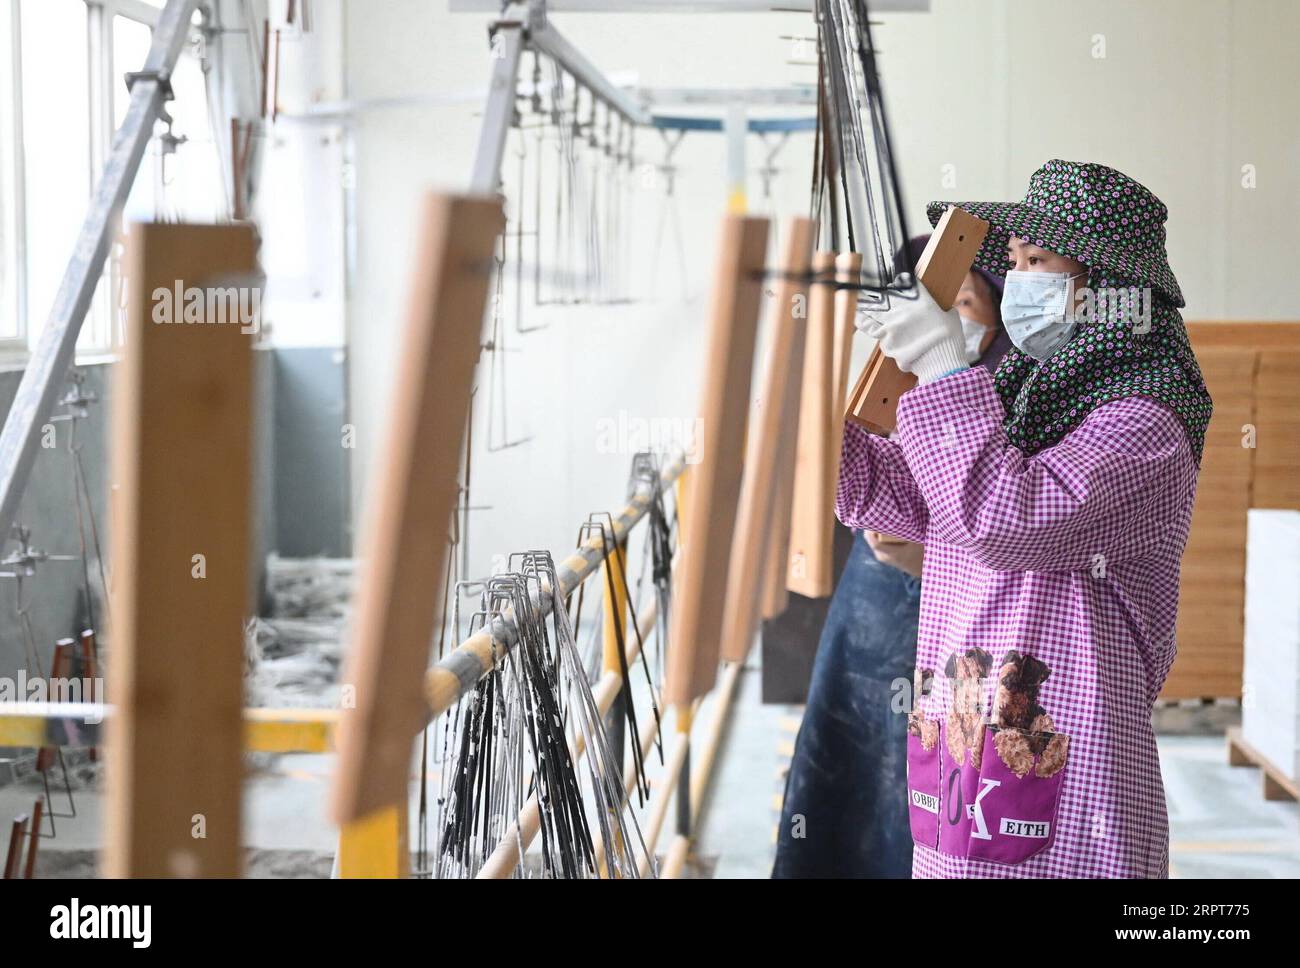 200412 -- ZHENGHE, 12 aprile 2020 -- i lavoratori realizzano prodotti di bambù in una fabbrica nella contea di Zhenghe, nella provincia del Fujian della Cina sudorientale, l'11 aprile 2020. Conosciuta come città artigianale di bambù in Cina, la contea di Zhenghe ha attivamente promosso lo sviluppo dell'industria del bambù con i suoi 460.000 mu circa 30.667 ettari di foresta di bambù. Oggi, ci sono circa 220 imprese con più di 50.000 persone che lavorano nelle industrie del bambù. Nel 2019, il valore totale della produzione dell'industria del bambù nella contea ha raggiunto 4,379 miliardi di yuan circa 0,62 miliardi di dollari, con un valore di produzione dei prodotti di esportazione pari a 876 milioni di yuan Foto Stock